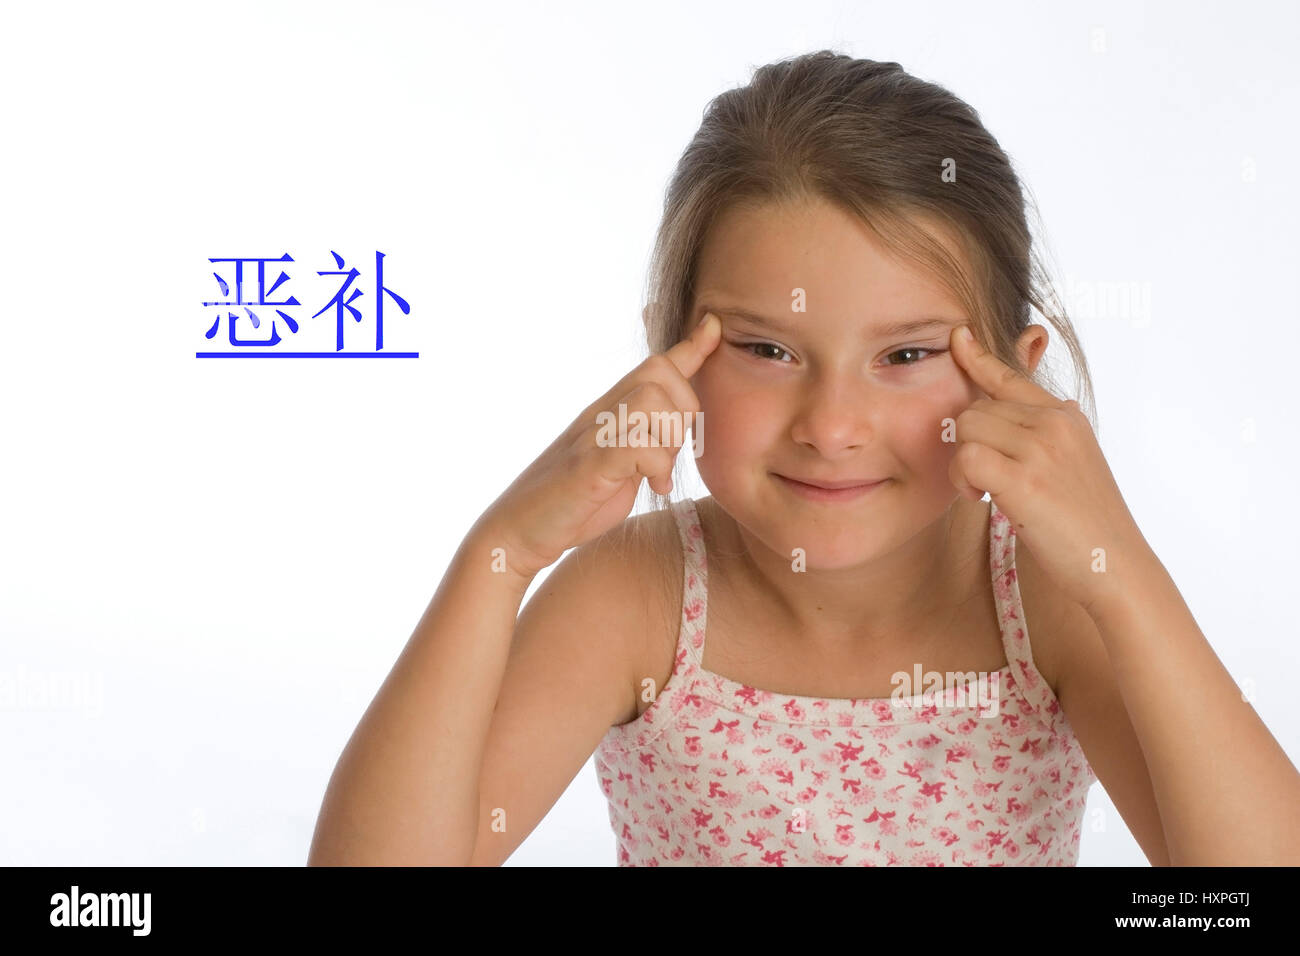 '6-year-old girl avec le caractère chinois pour ''apprendre'' (Mr)', sechsjähriges Mädchen mit chinesischem Schriftzeichen für "Lernen" (MR) Banque D'Images